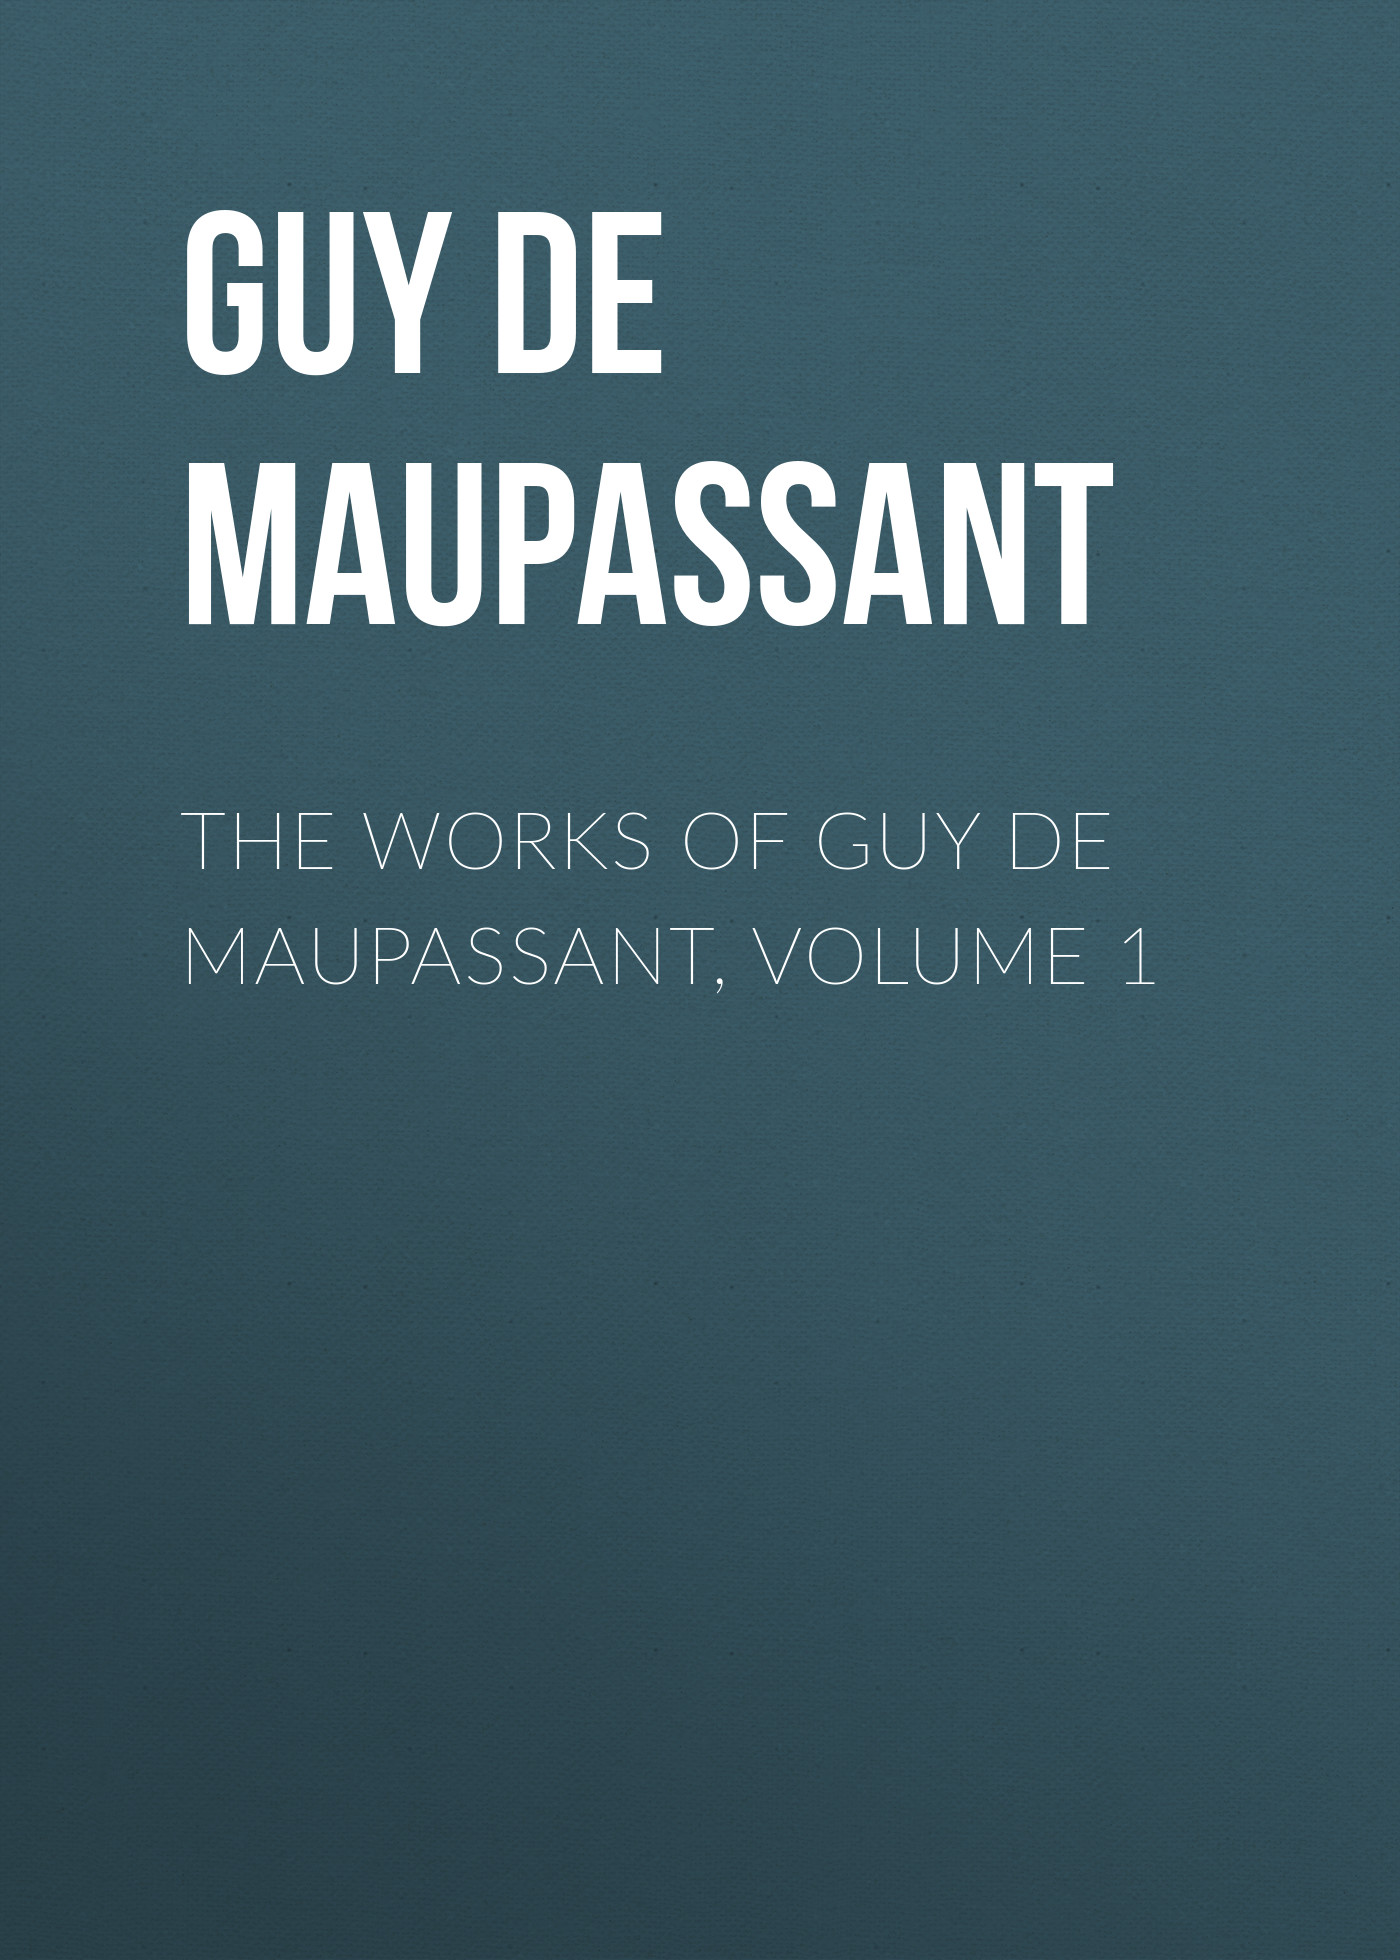 Книга The Works of Guy de Maupassant, Volume 1 из серии , созданная Guy Maupassant, может относится к жанру Литература 19 века, Зарубежная старинная литература, Зарубежная классика. Стоимость электронной книги The Works of Guy de Maupassant, Volume 1 с идентификатором 25292235 составляет 0 руб.